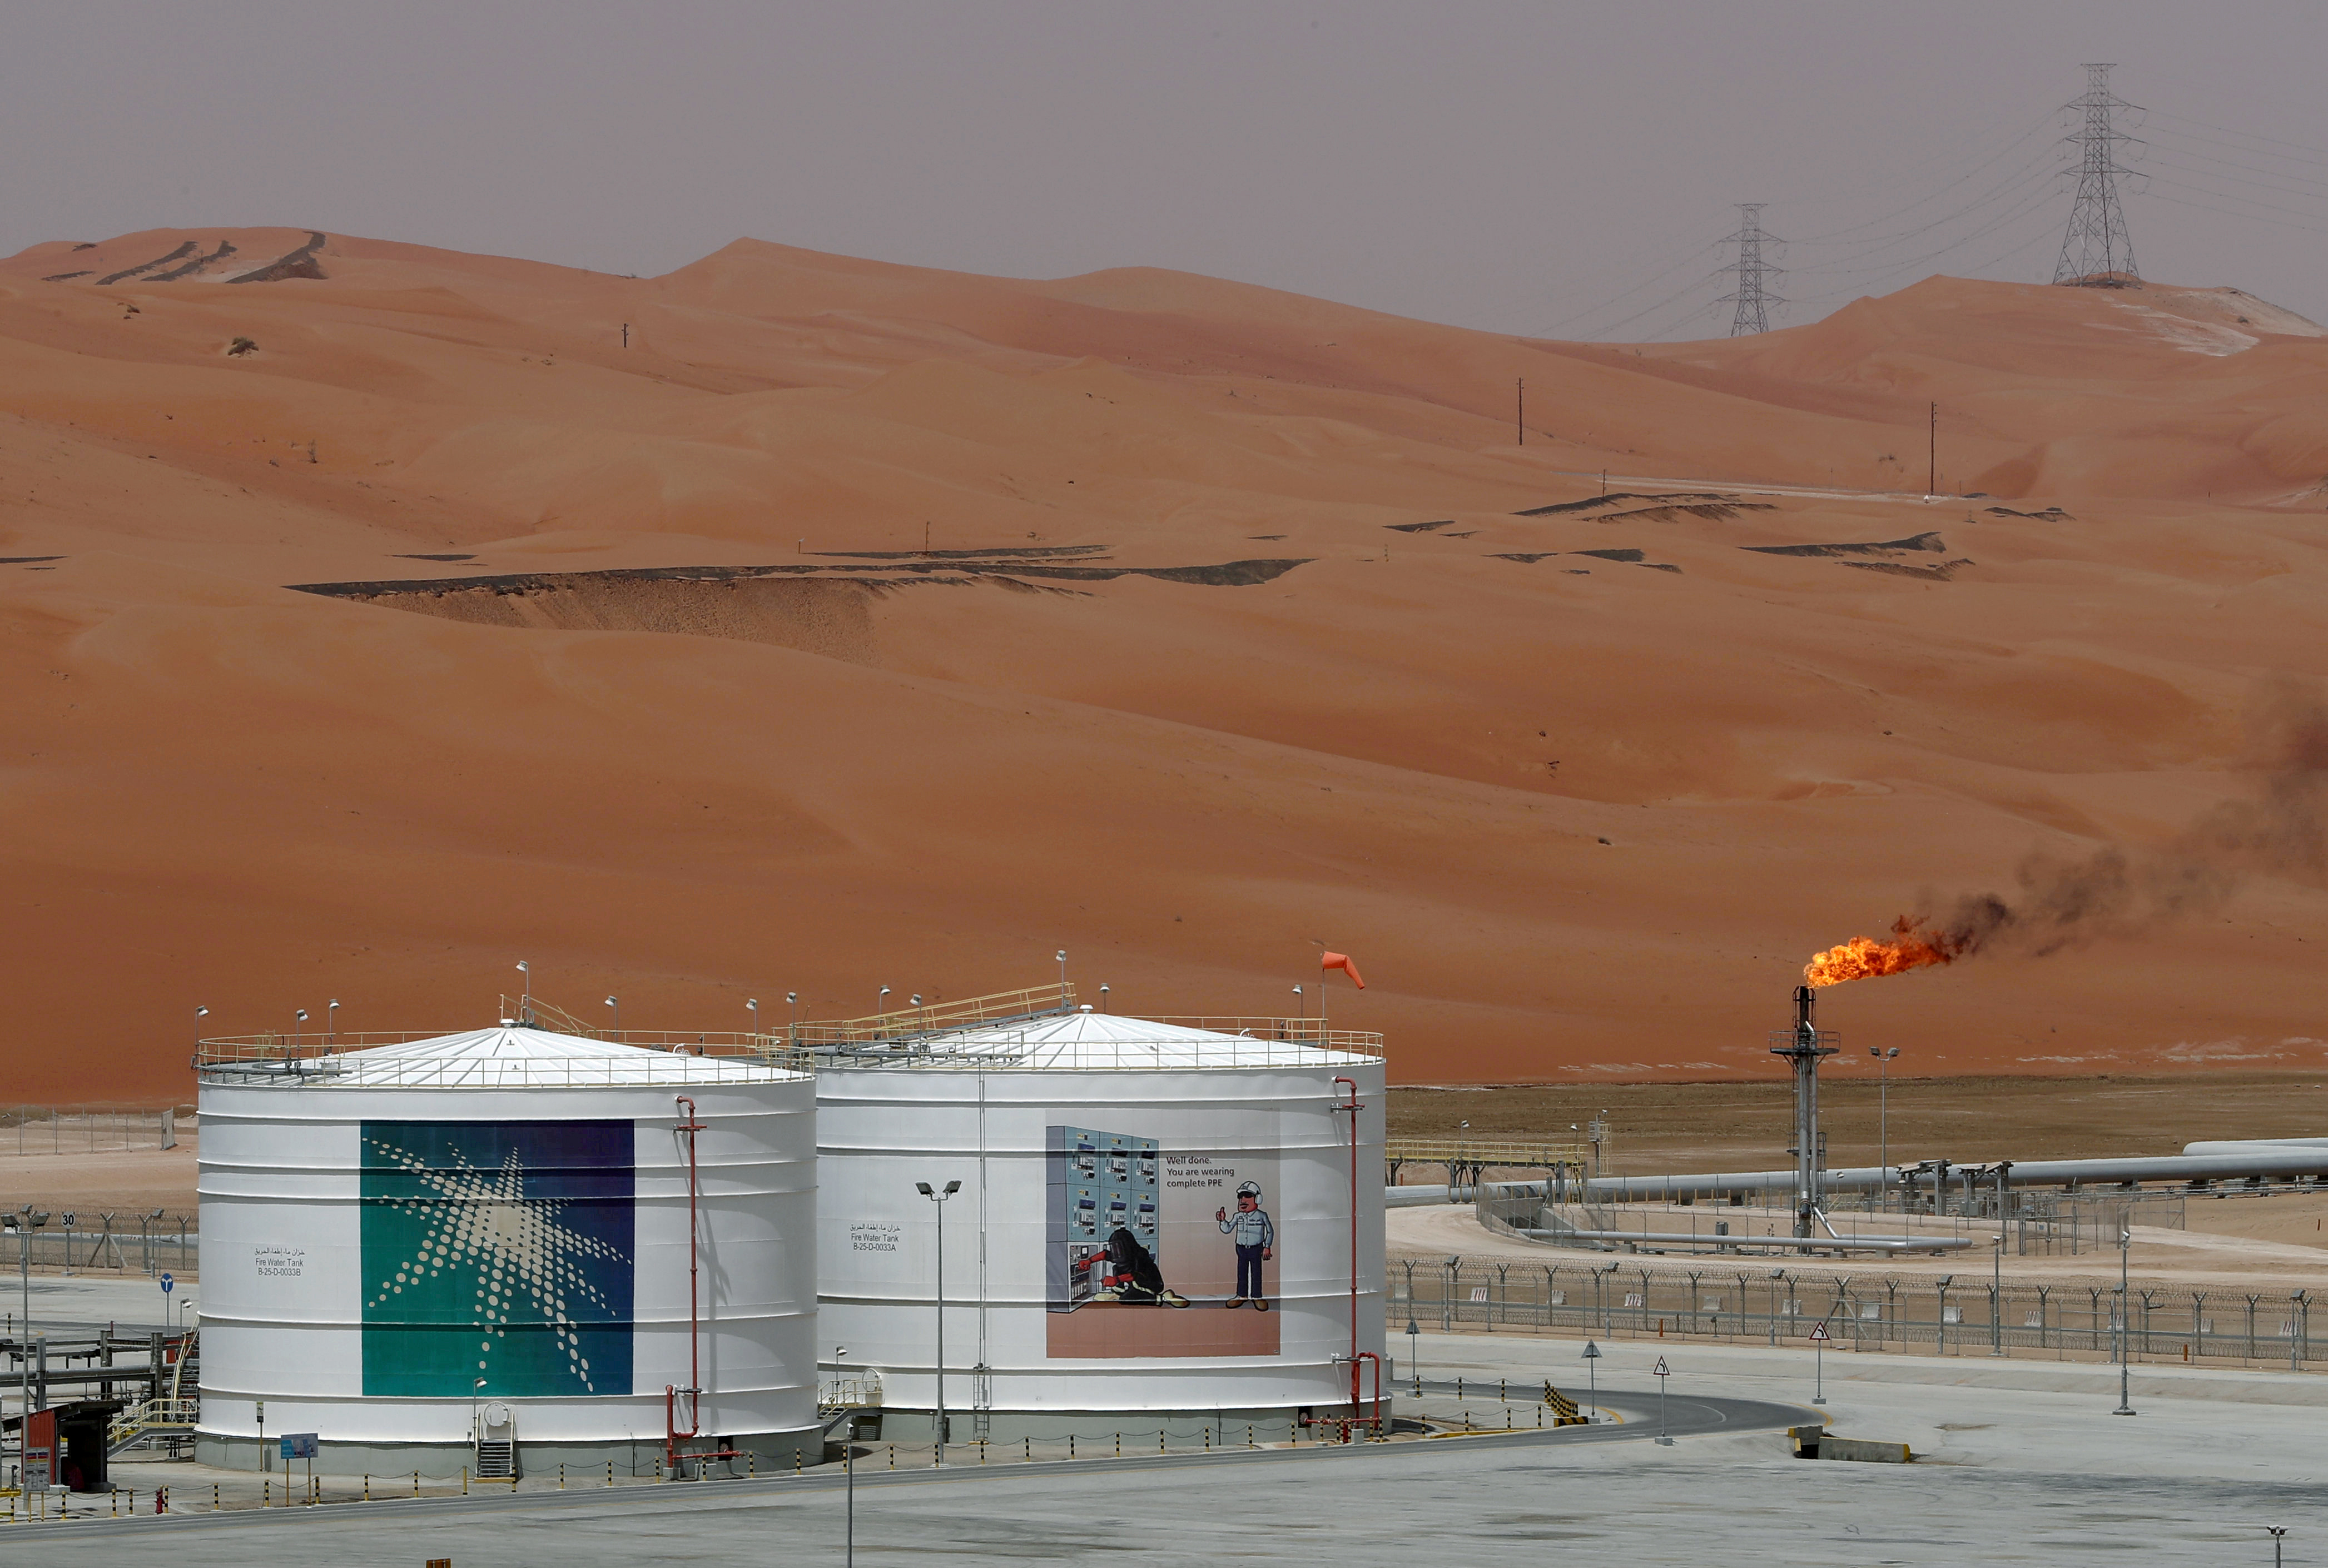 Σαουδική Αραβία: Προσωρινή διακοπή πετρελαίου στις εγκαταστάσεις που δέχθηκαν επίθεση